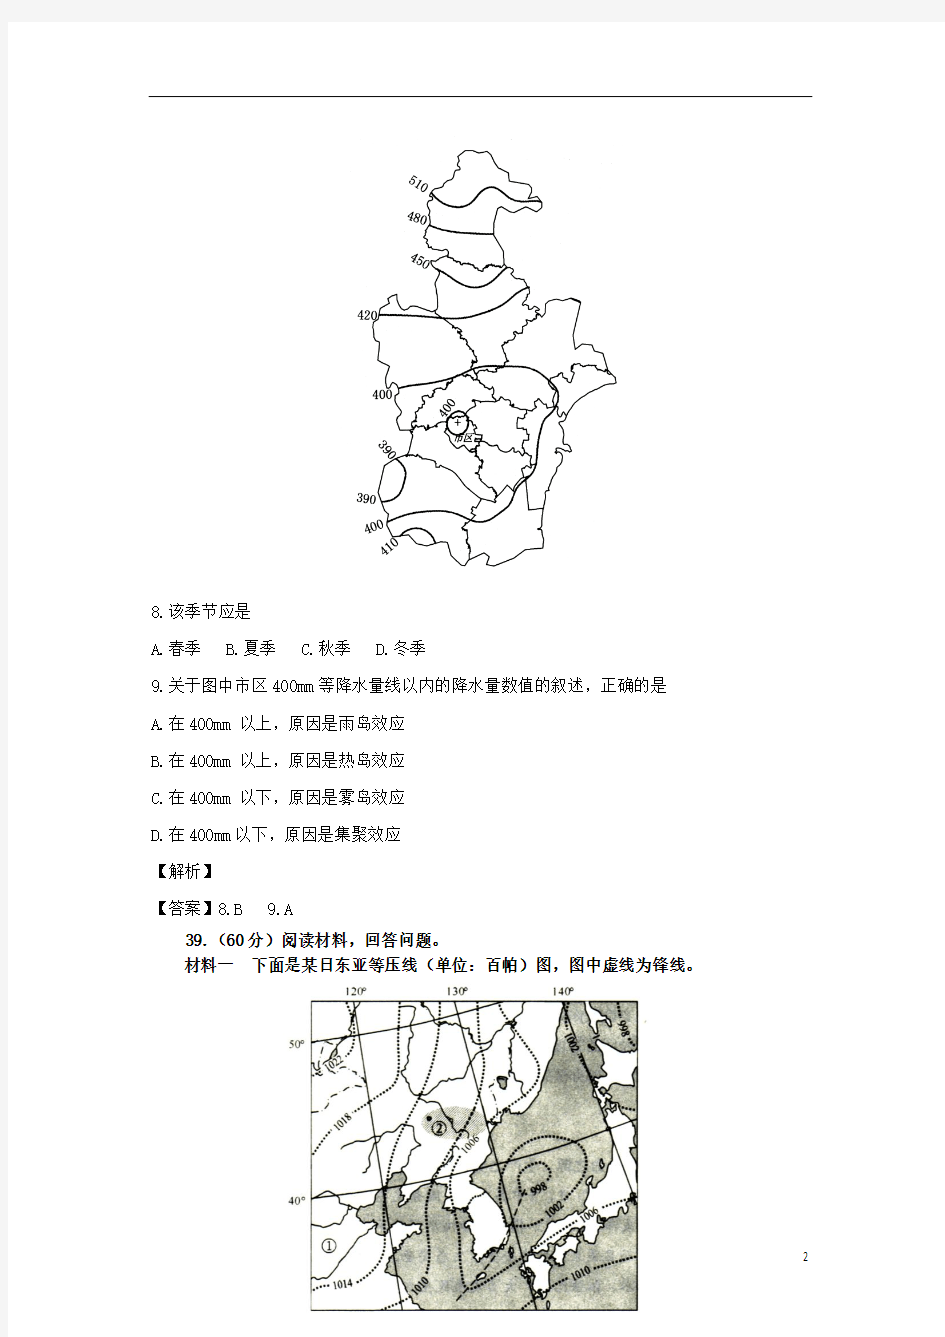 2012届全国高考地理模拟新题筛选专题汇编27_中国地理-中国北方地区和南方地区